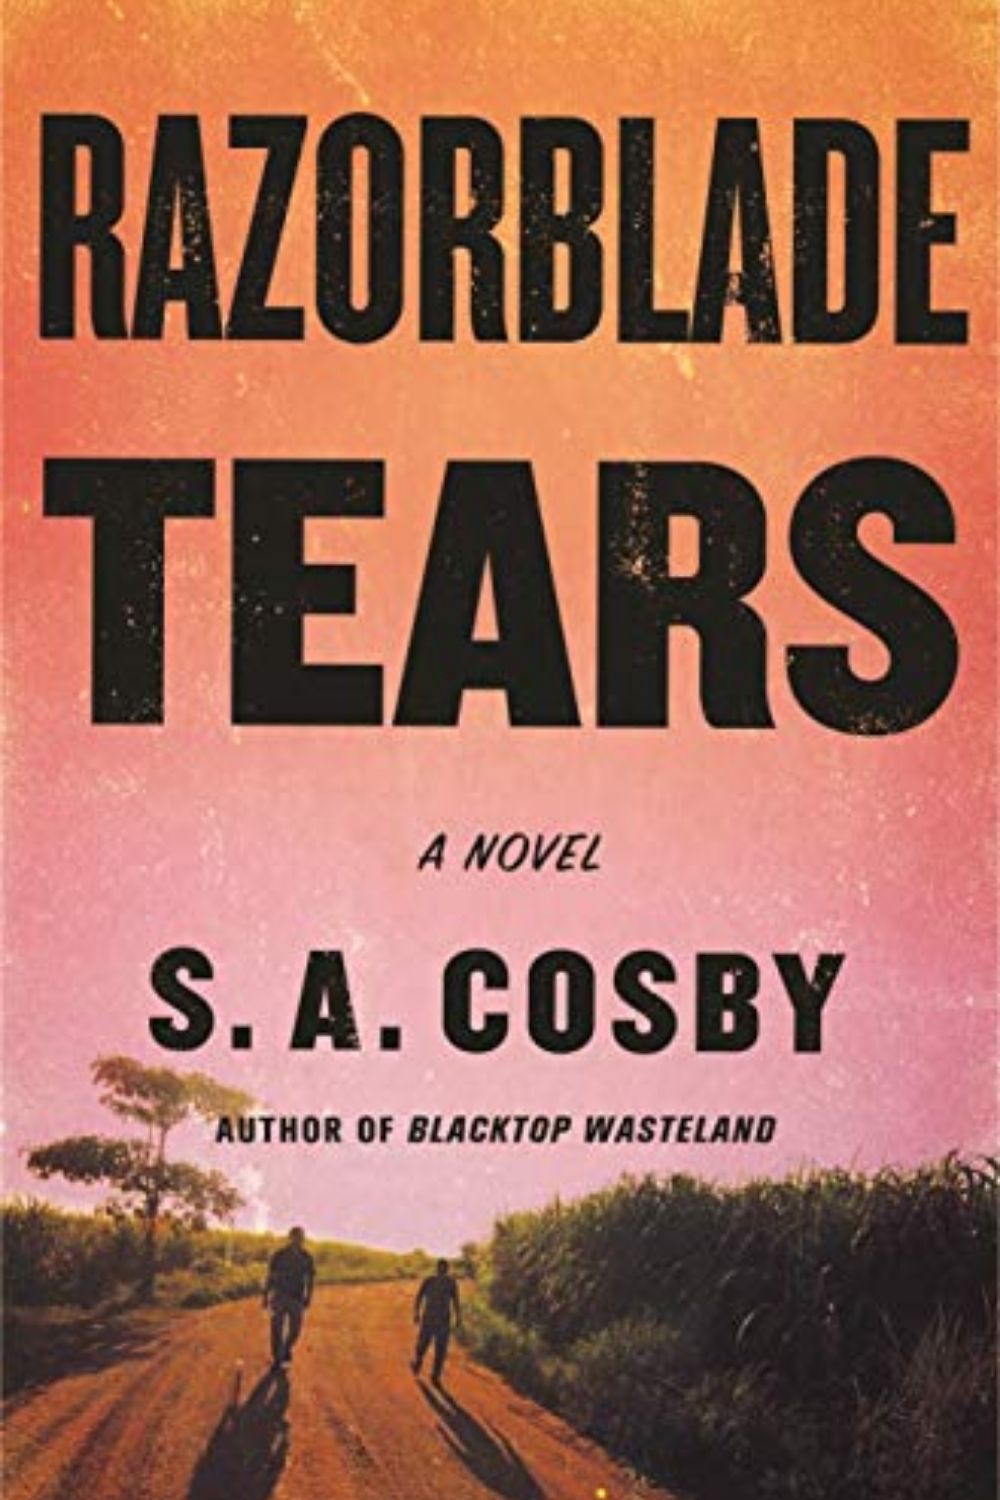 Razorblade Tears de SA Cosby es una novela de ficción policiaca de varios niveles